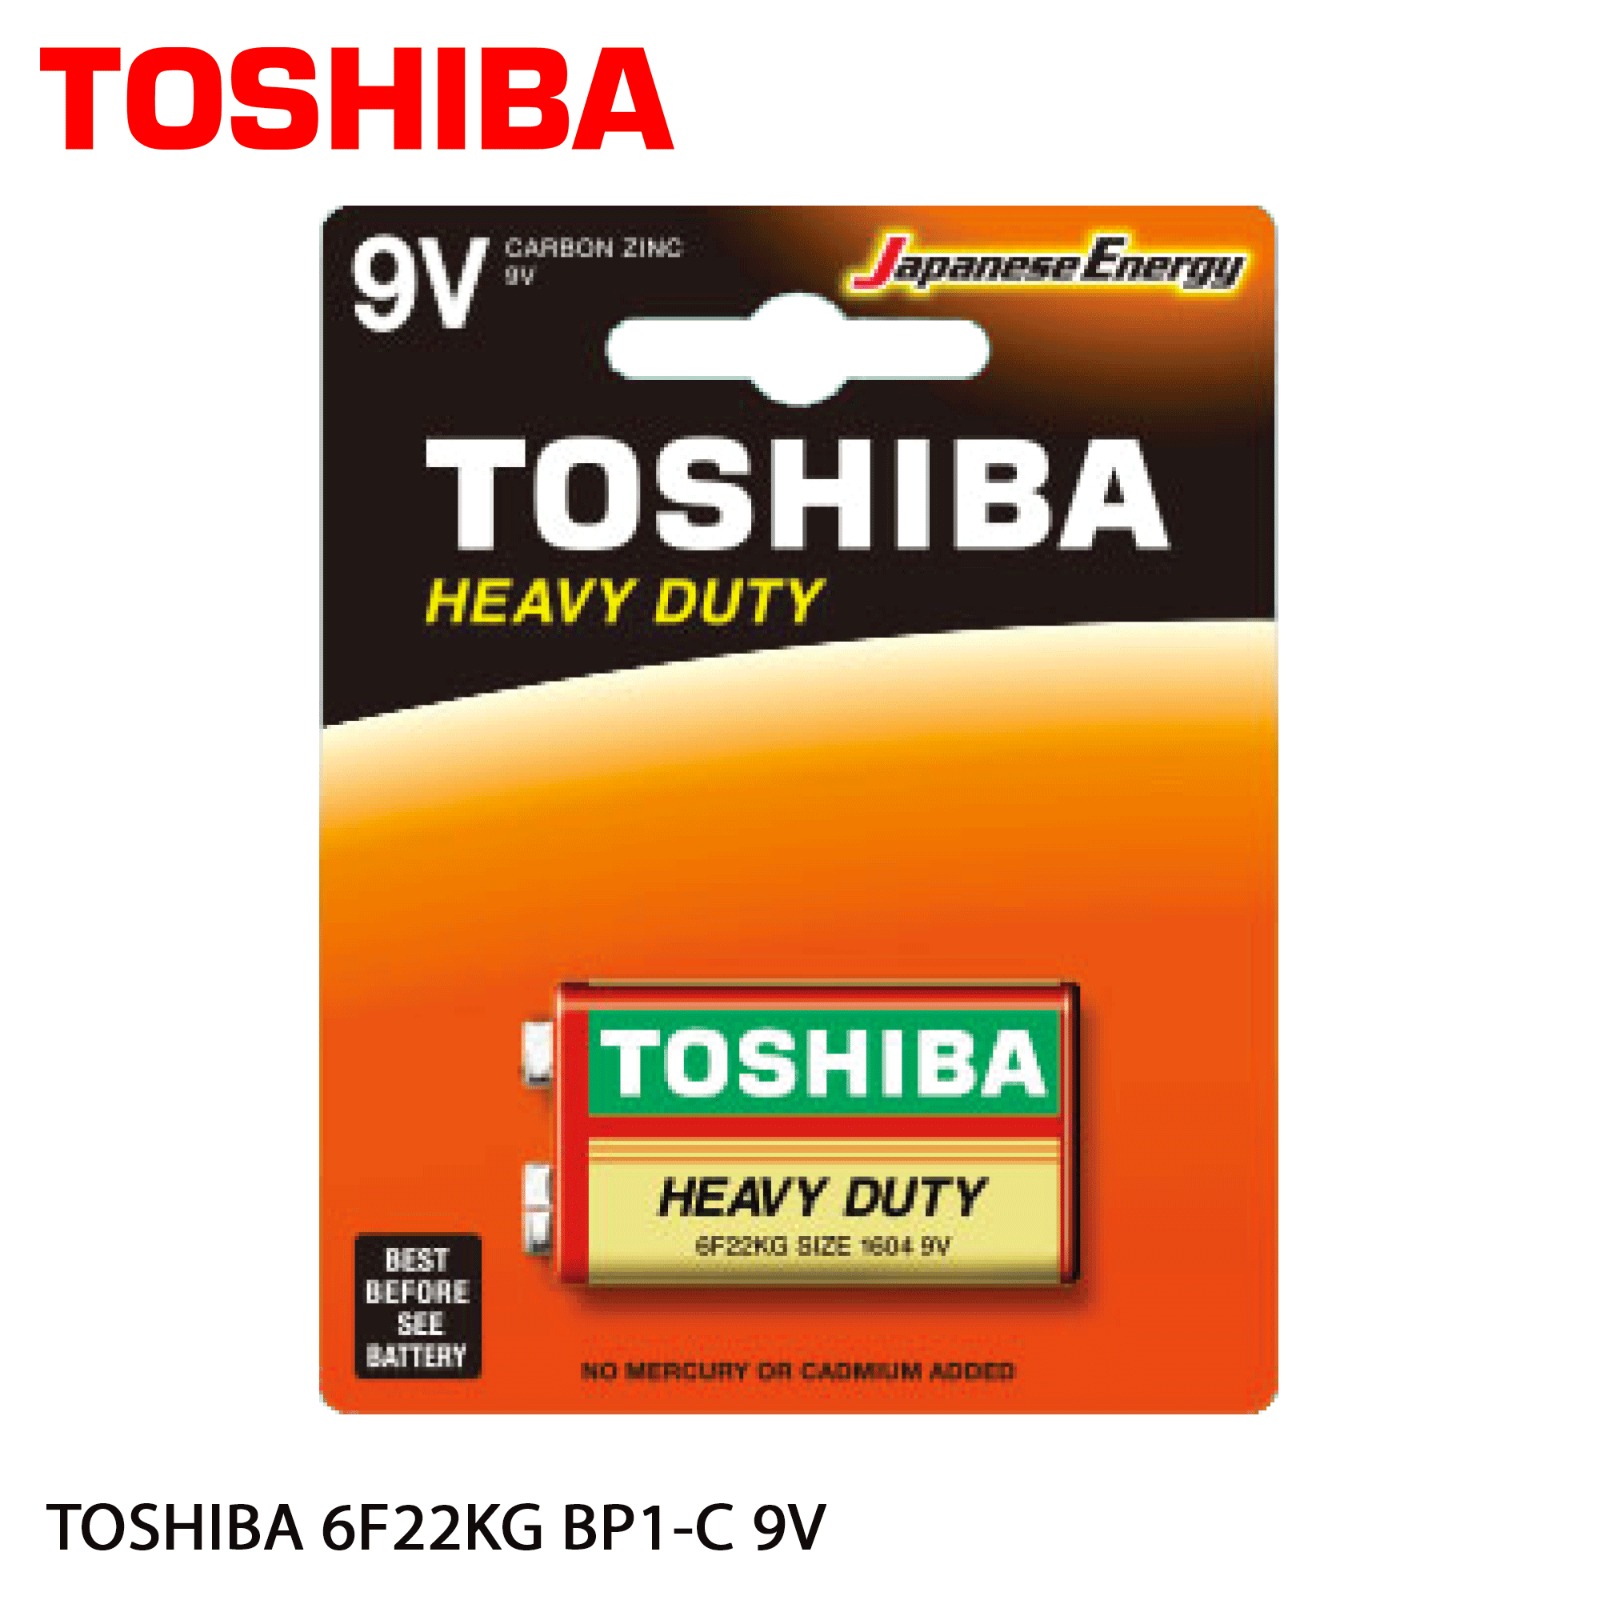 TOSHIBA 6F22KG BP-1C 9V